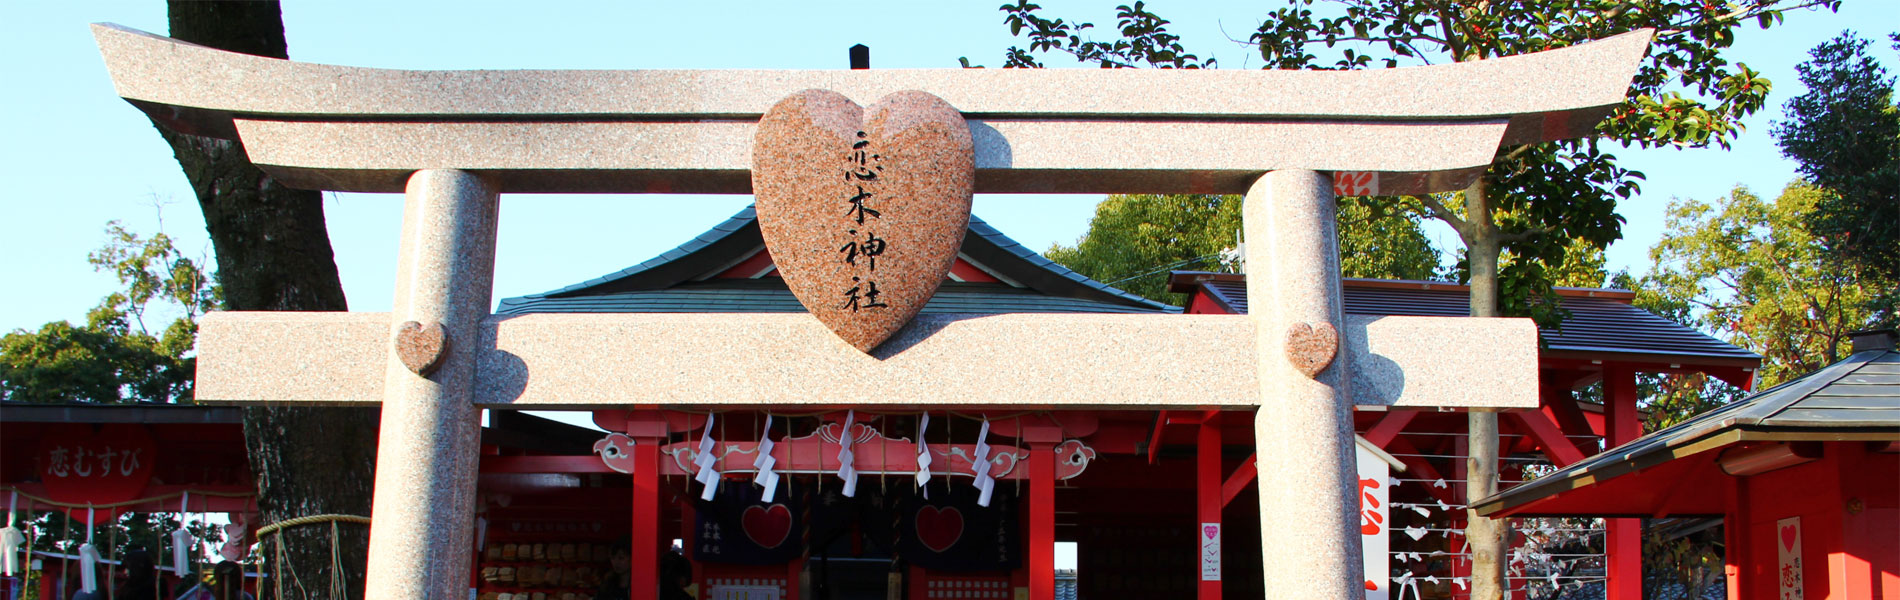 恋の木神社